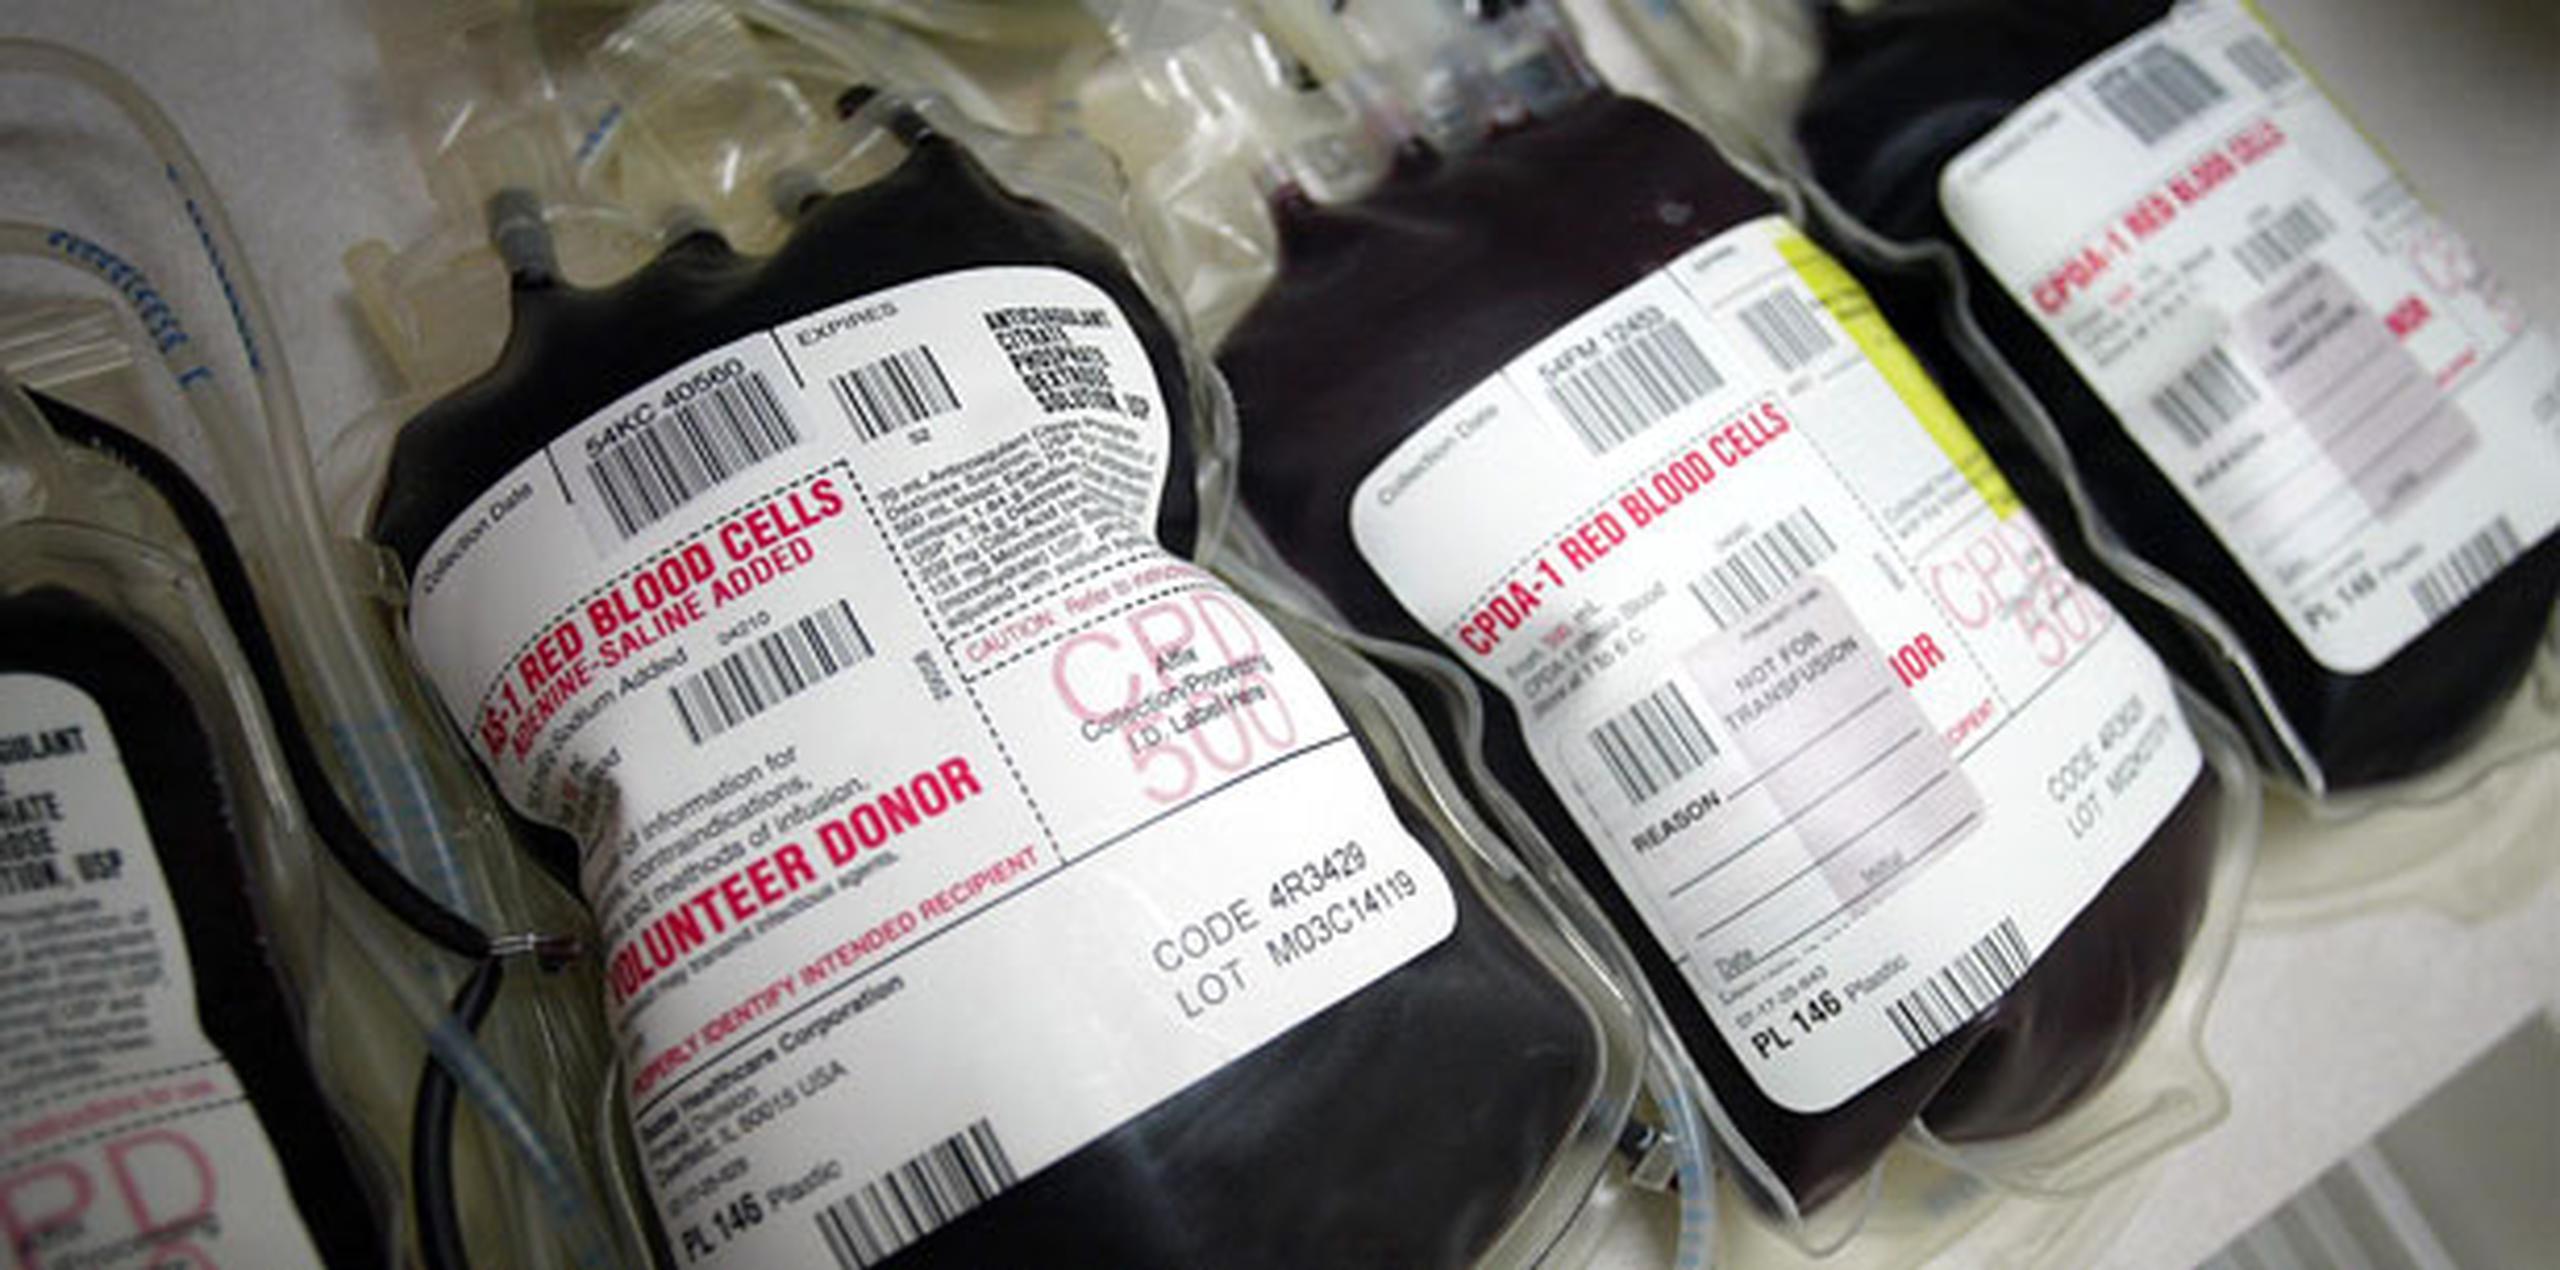 La Cruz Roja también pidió a los donantes de sangre tipo O negativo, y que cumplen con los requisitos establecidos, a donar dos unidades de células rojas a través del sistema automatizado ALYX. (Archivo)